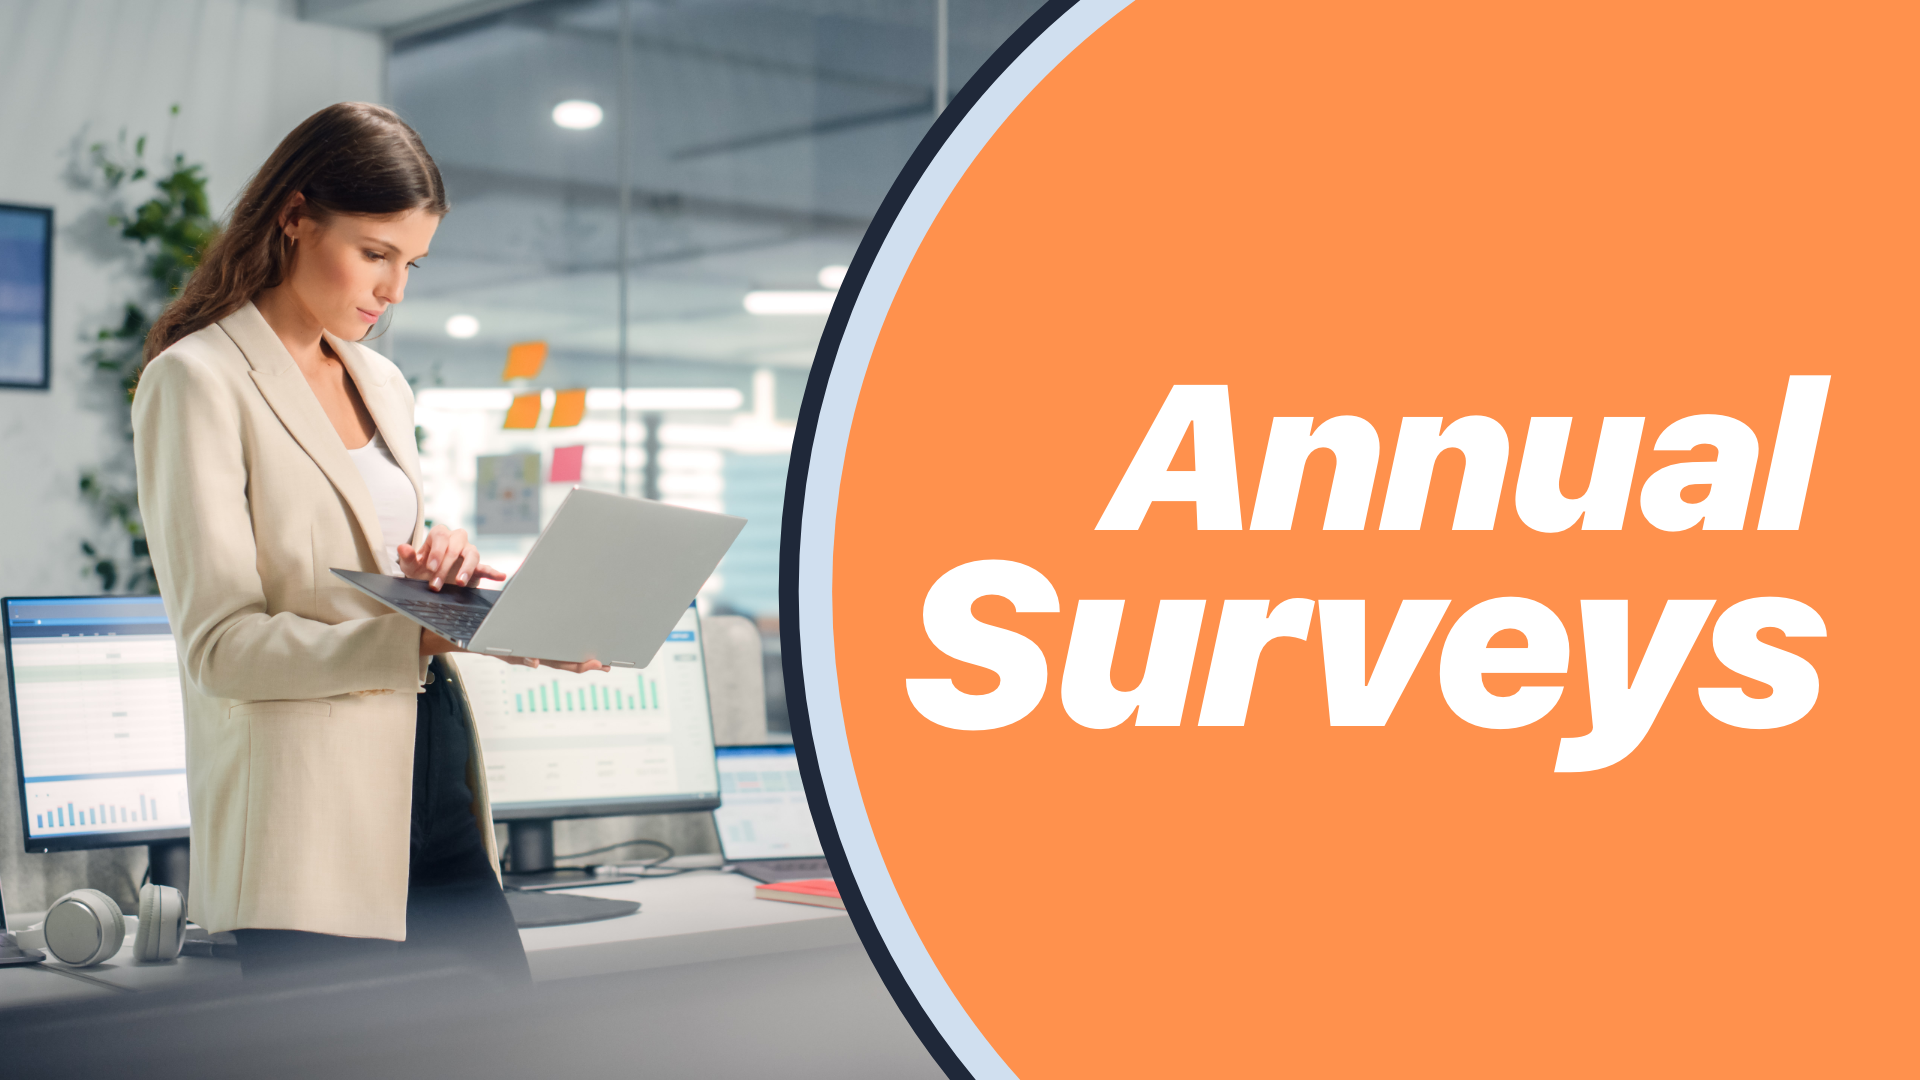 002. Annual Surveys